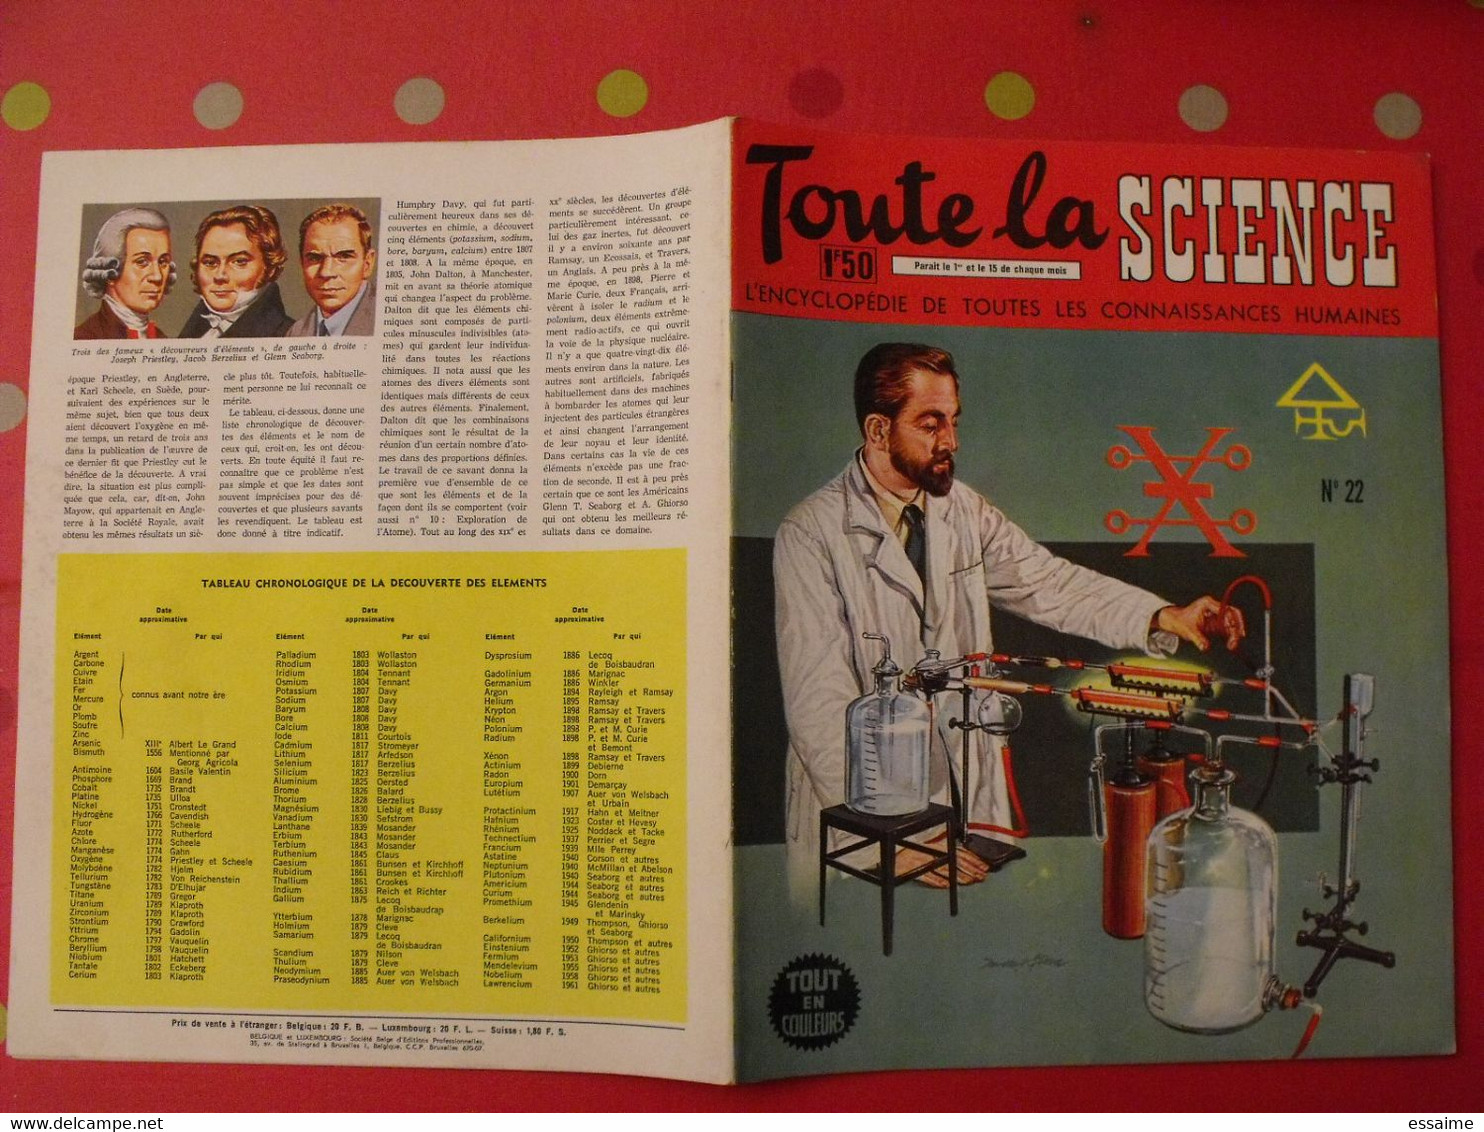 41 numéros de "Toute la science". 1963-65. encyclopédie de toutes les connaissances humaines. dessinée